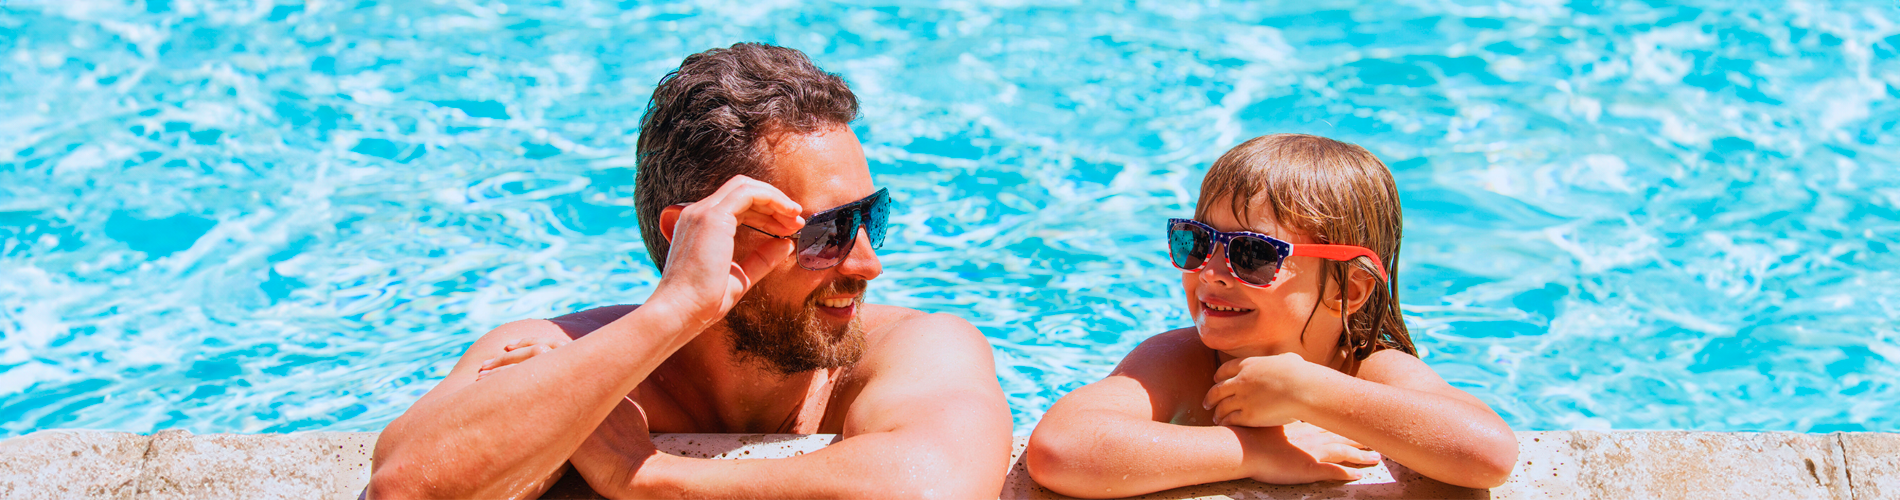 un homme et une fille portant des lunettes de soleil dans une piscine